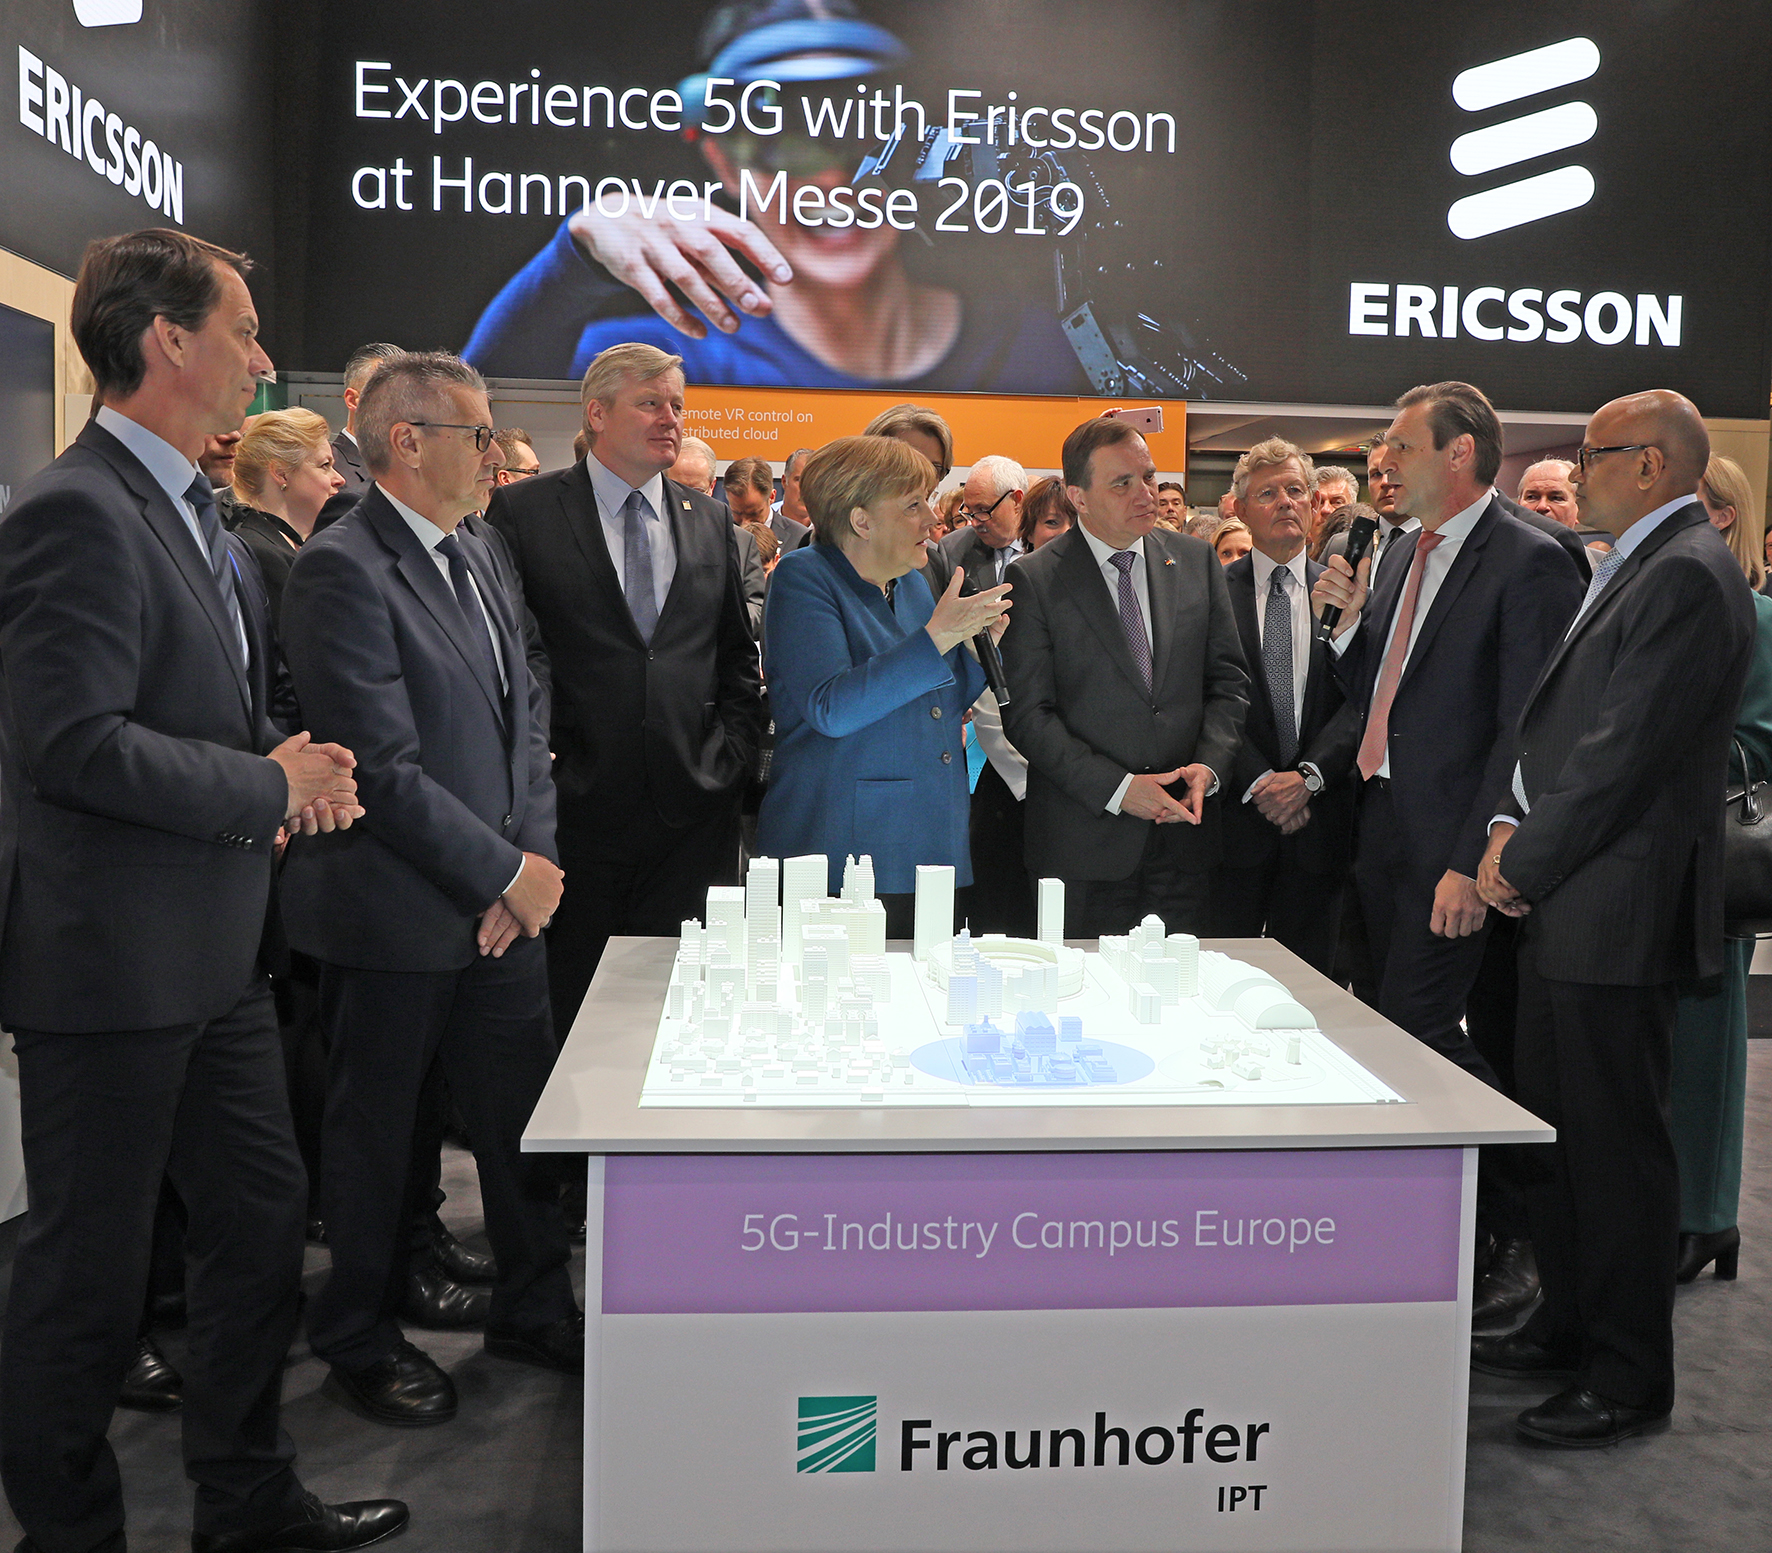 Am Eröffnungstag der Hannover Messe informierten sich Bundeskanzlerin Angela Merkel und der schwedische Ministerpräsident Stefan Lövfen über das Konzept des 5G-Industry Campus Europe von Fraunhofer IPT und Ericsson.